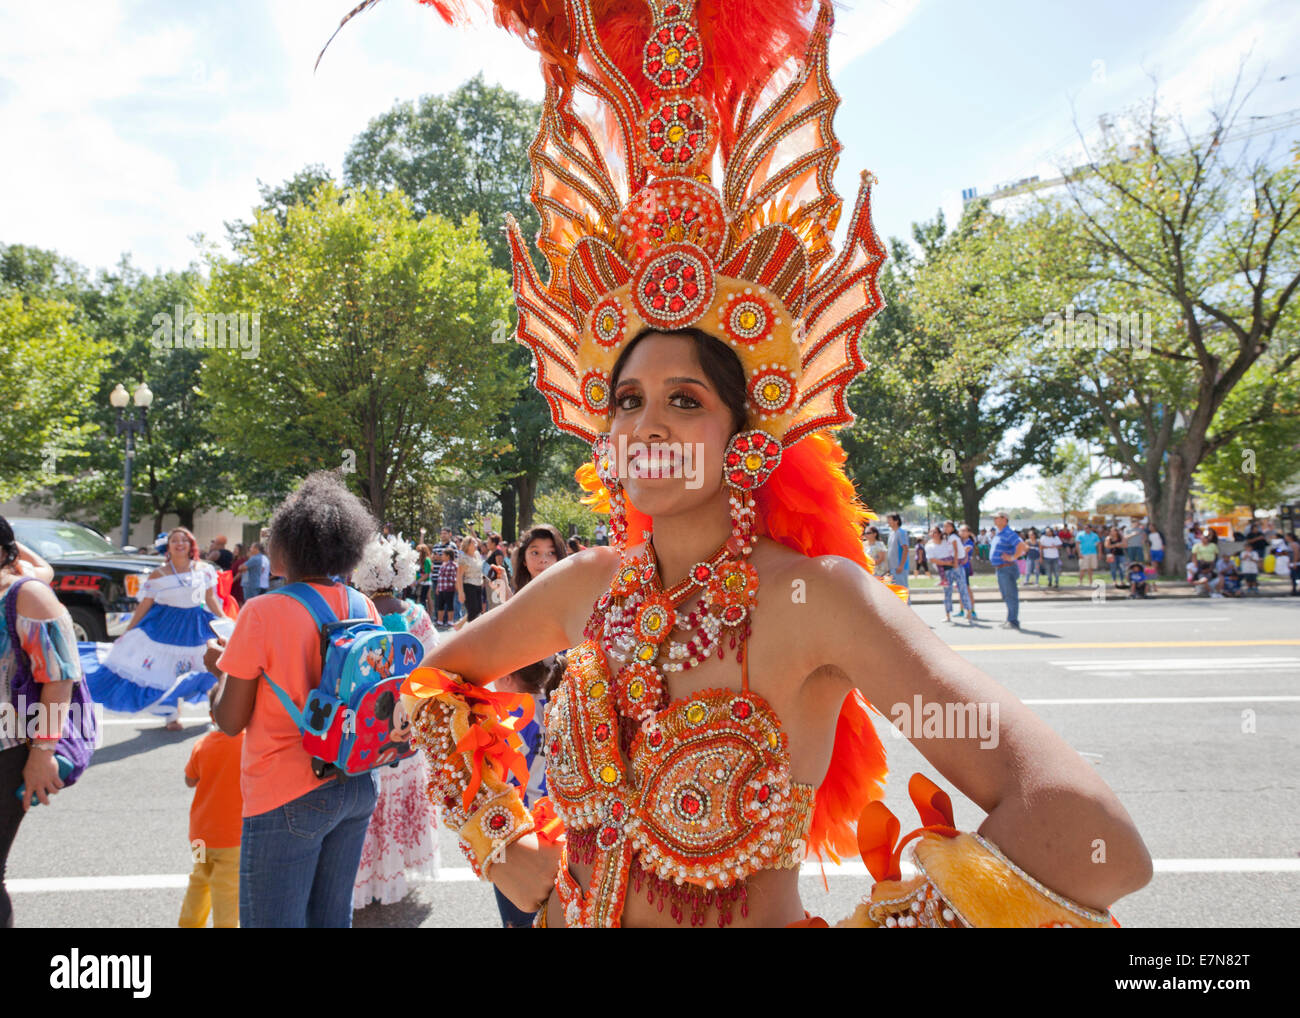 Femme carnaval brésilien Samba Dancer en costume traditionnel - USA Banque D'Images